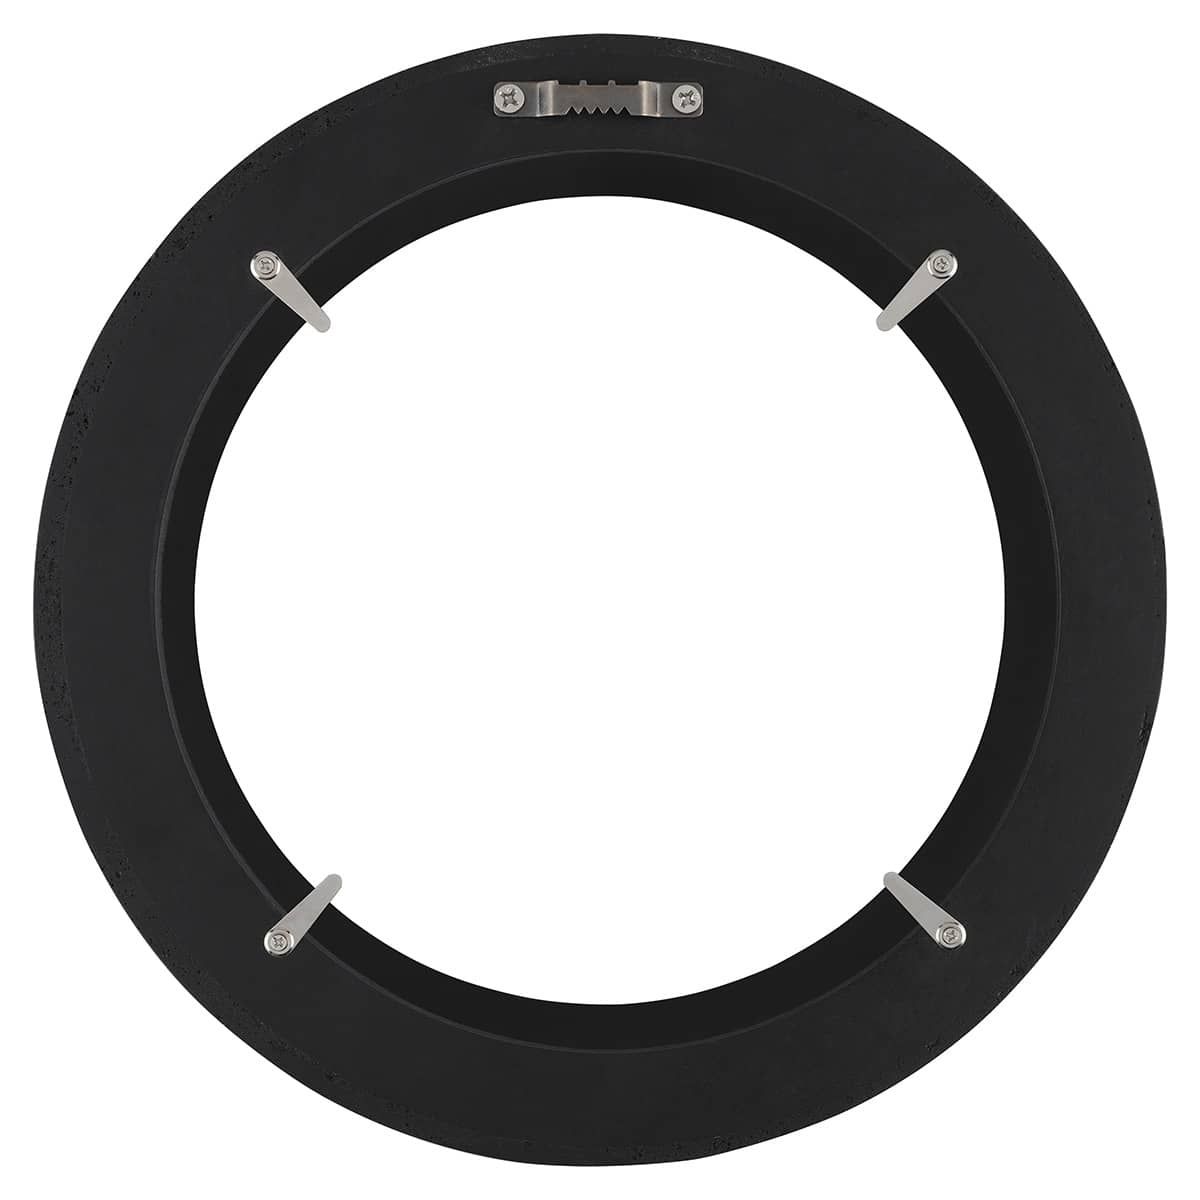 Ambiance Round Frame - Black, 10" Diameter